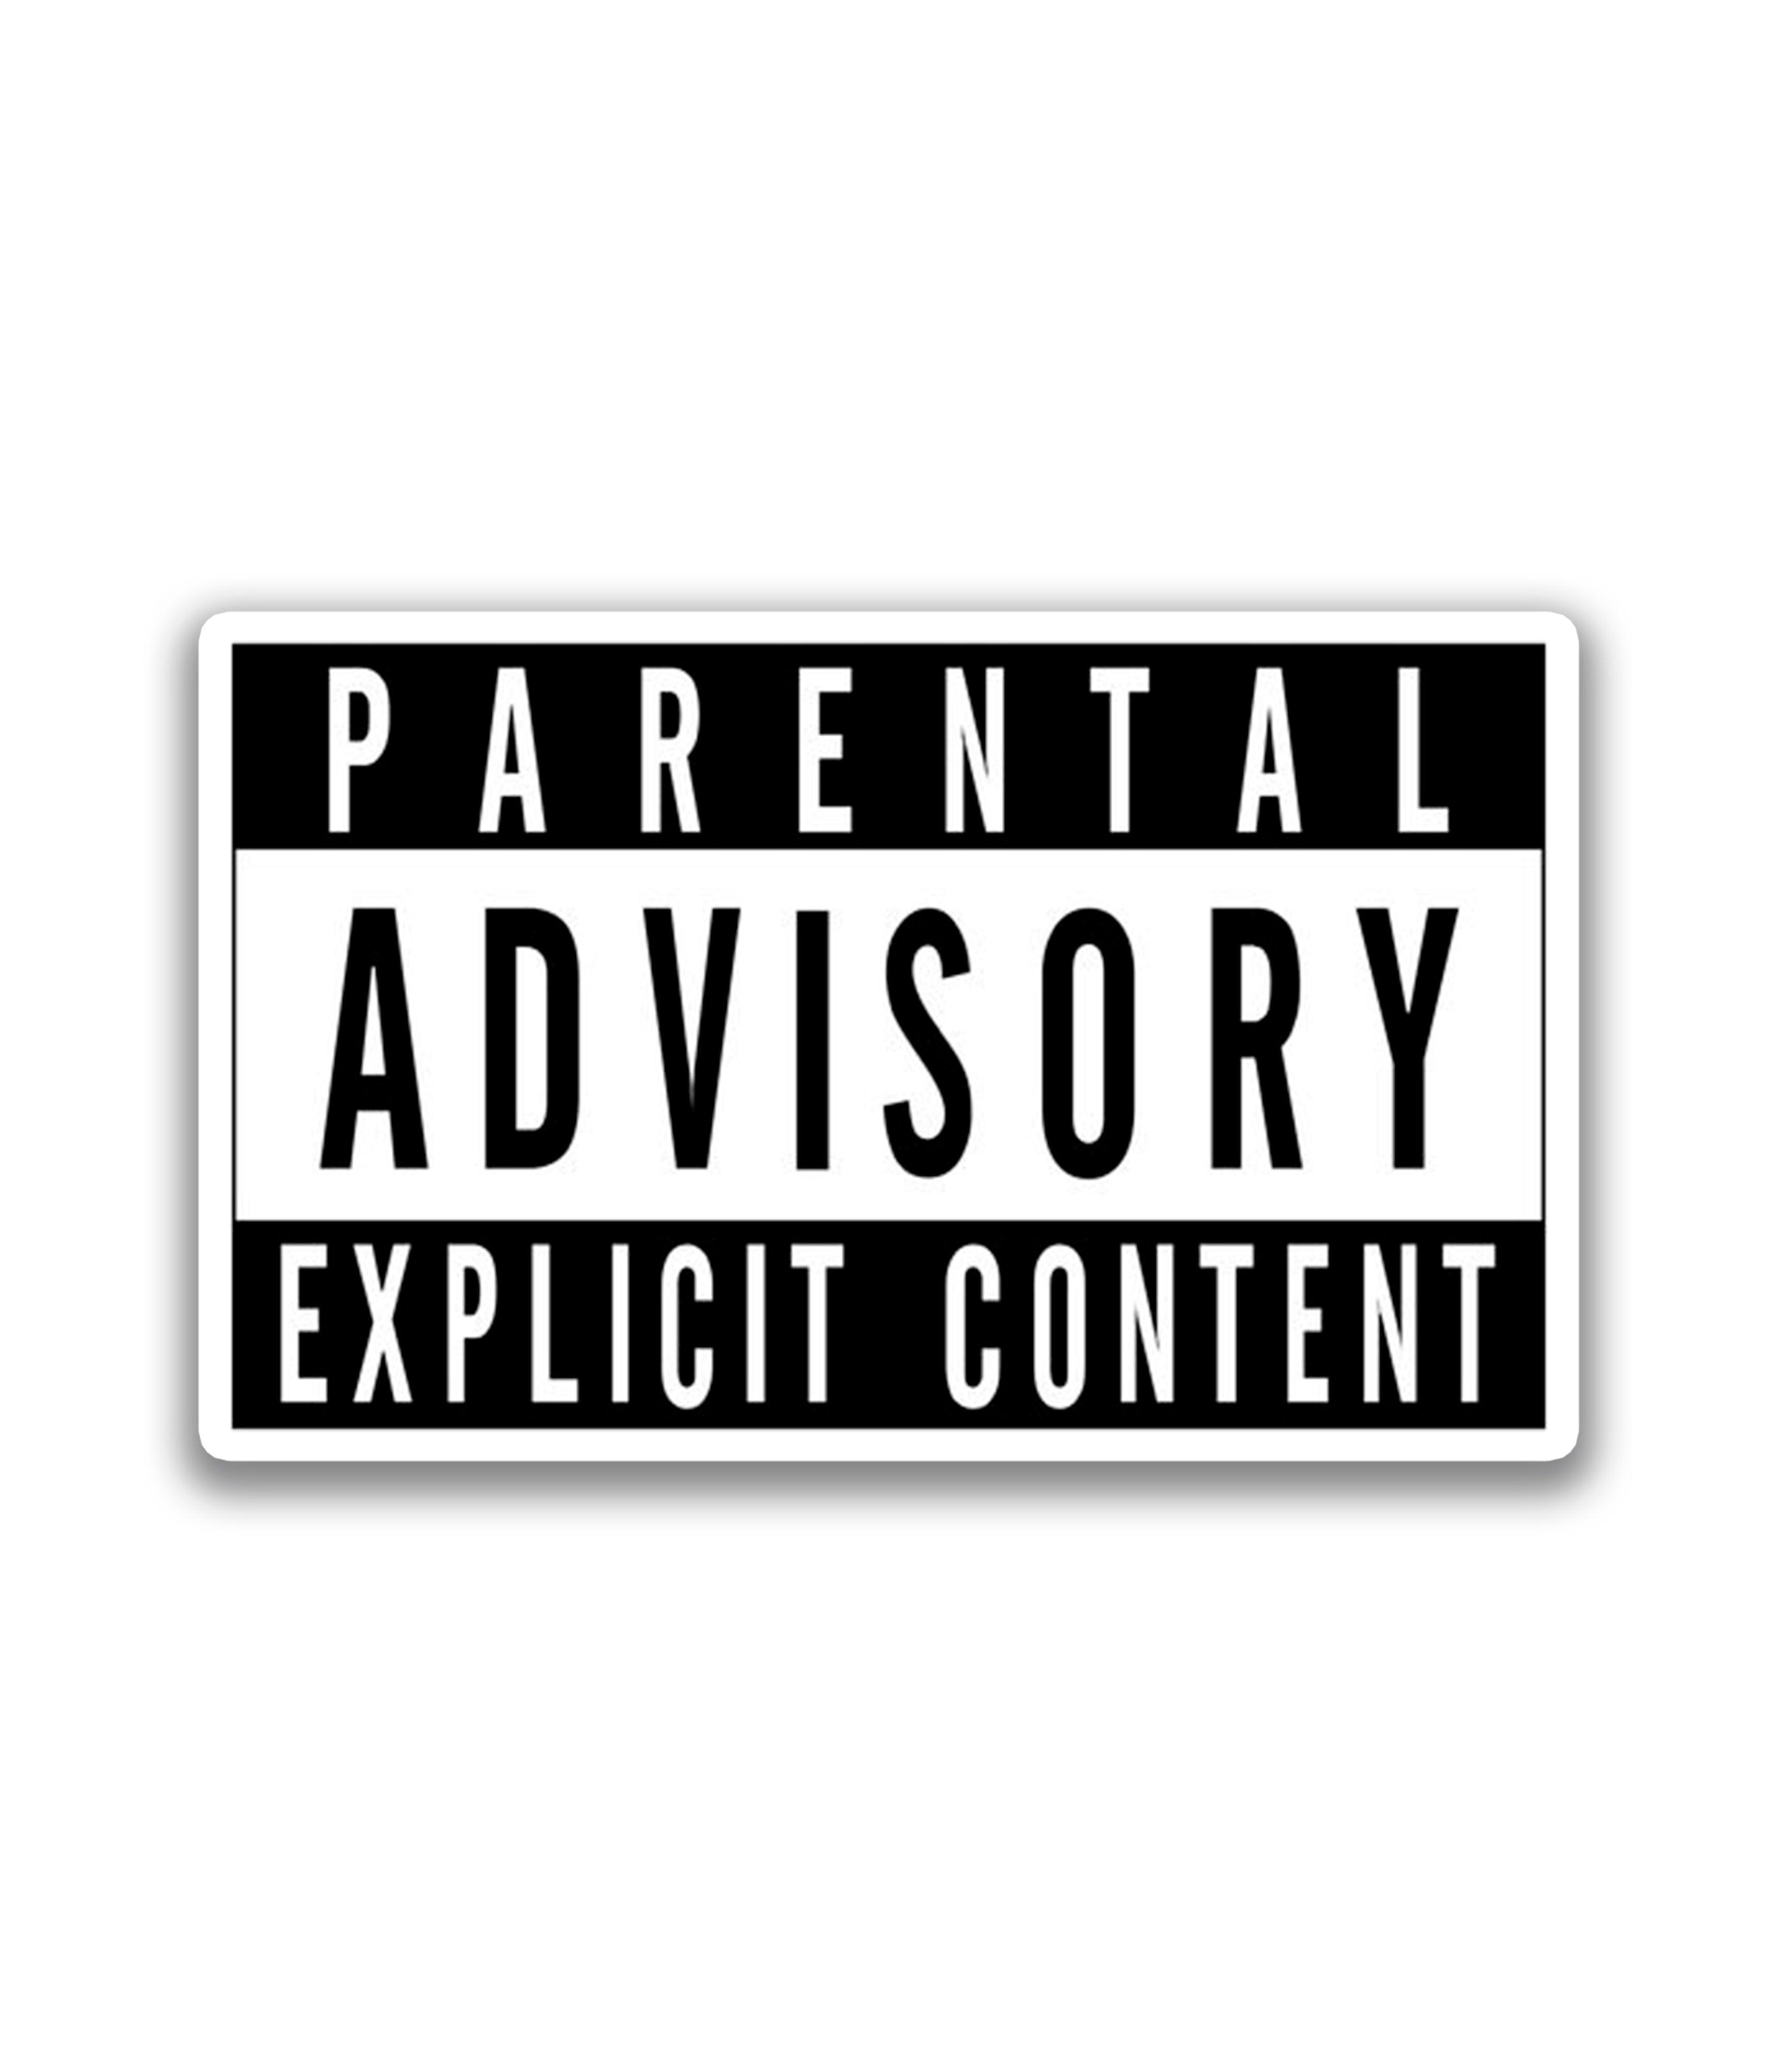 Parental advisory - Rei do Sticker